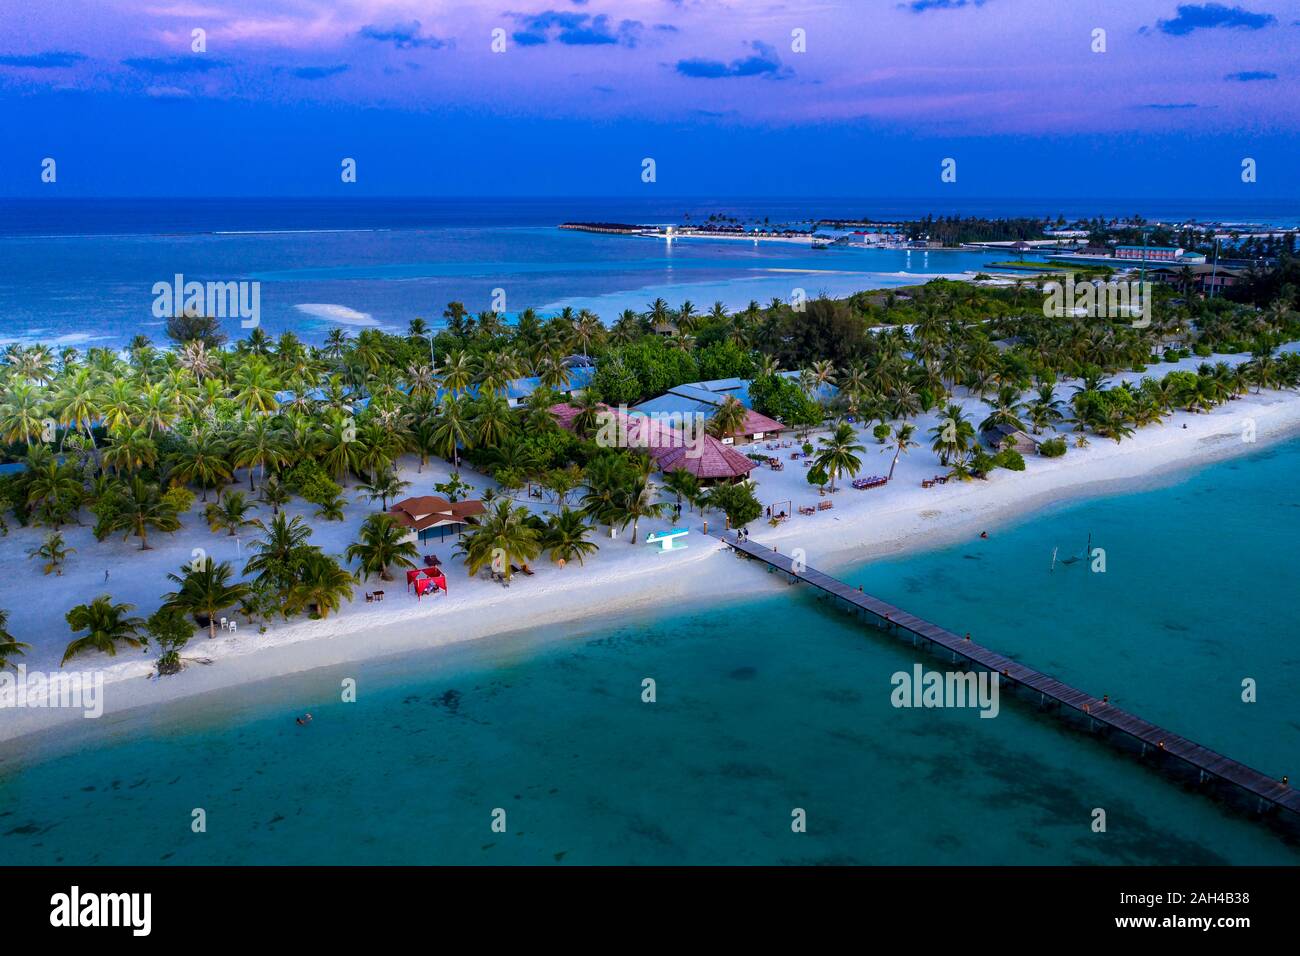 Maldivas, Bodufinolhu, vista aérea del complejo turístico costero de South Male Atoll al atardecer Foto de stock